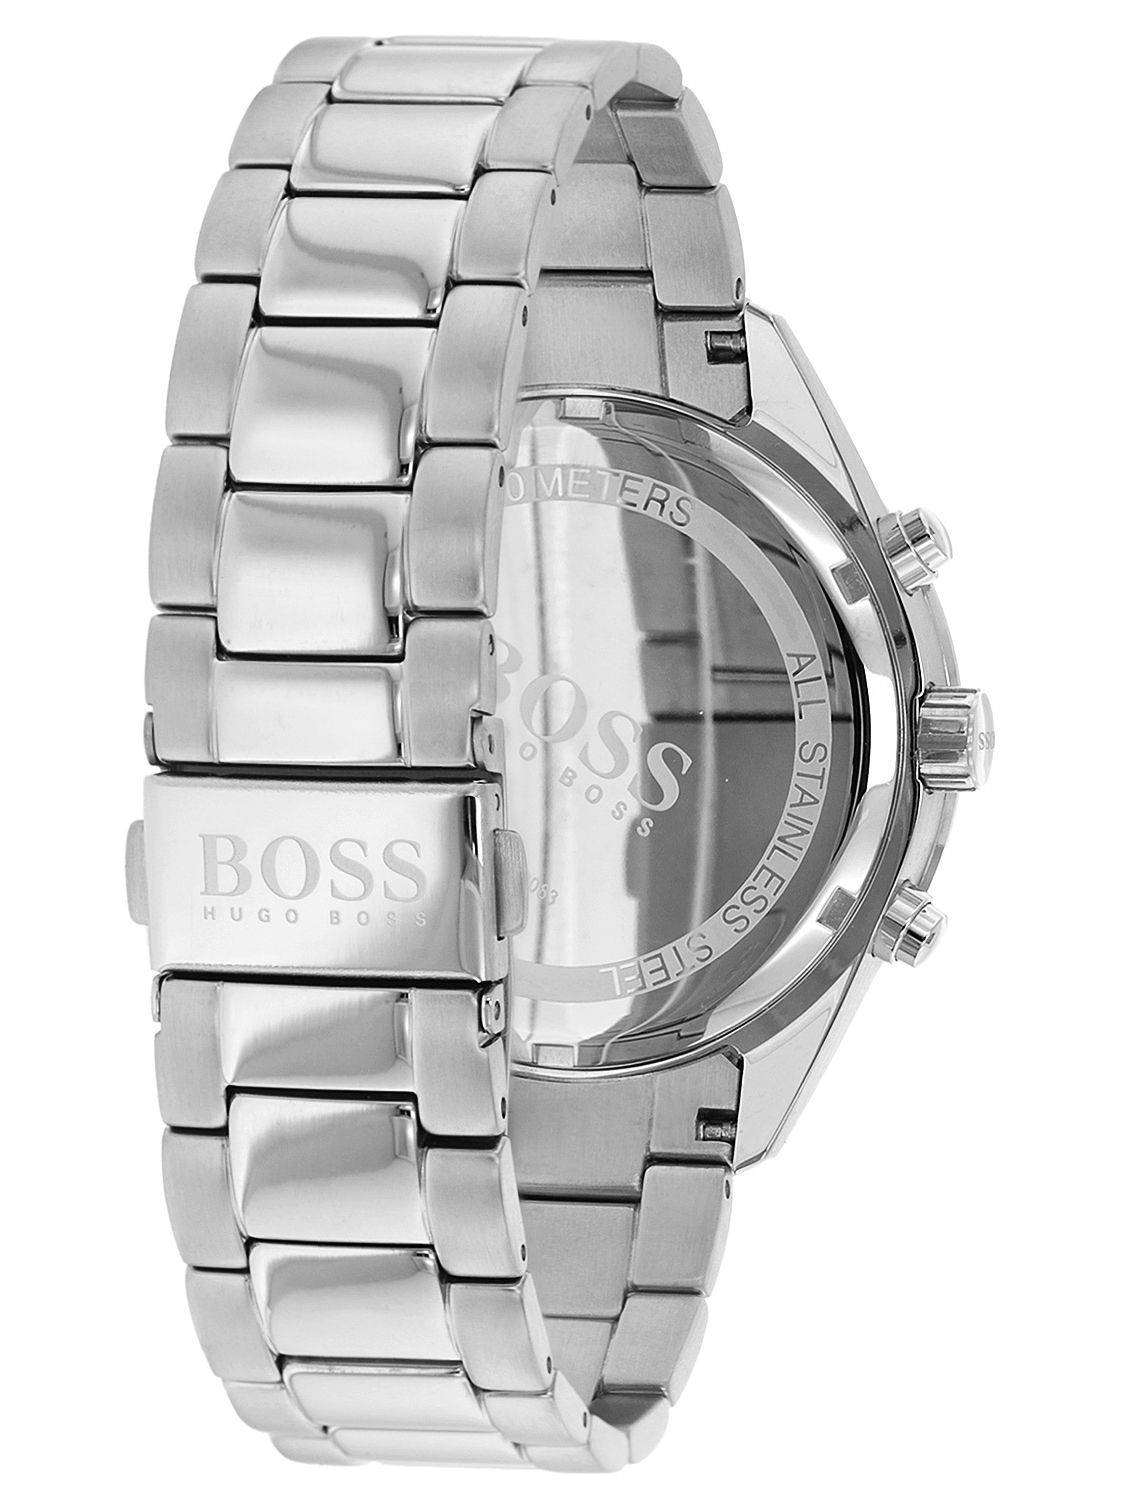 Hugo Boss Talent Blue Dial Silver Steel Strap Watch for Men - 1513582